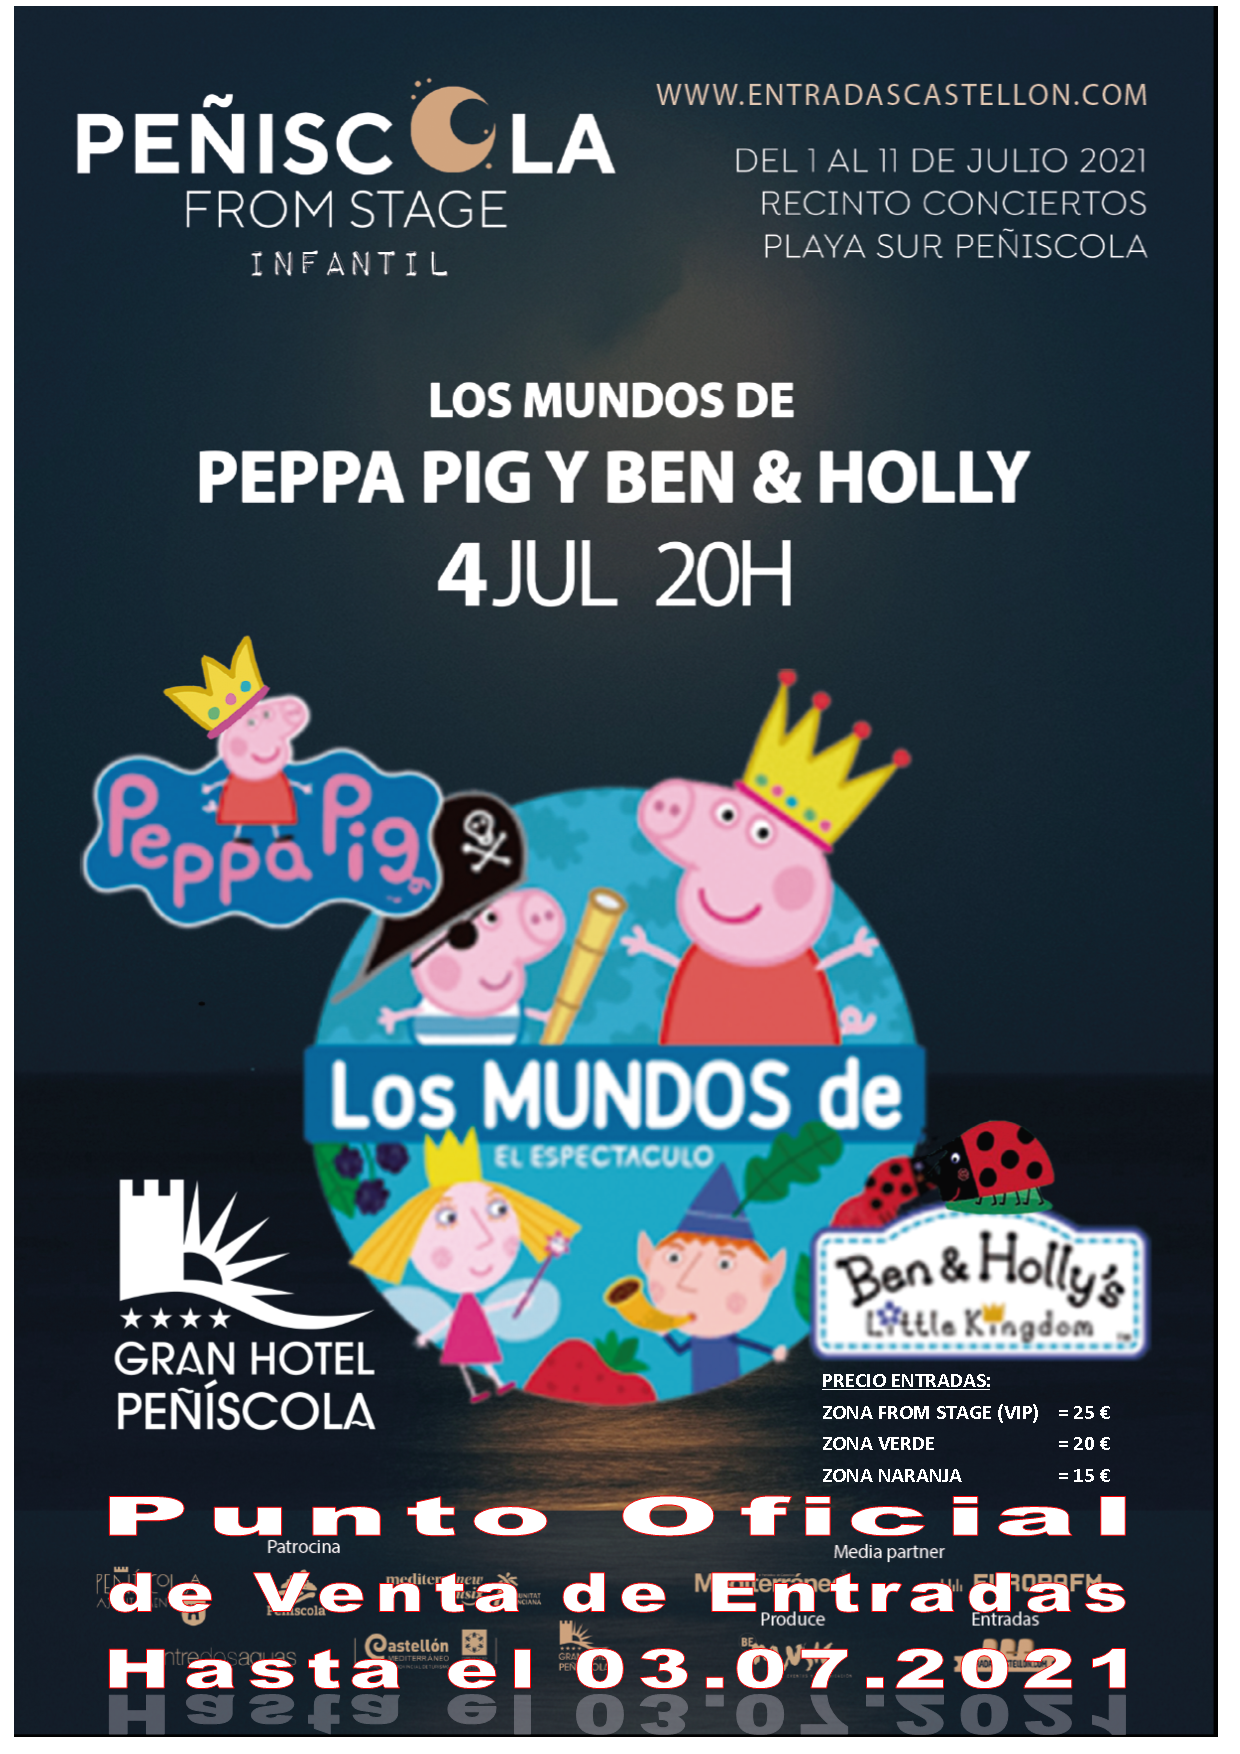 Gran Hotel Peñíscola**** Punto de venta Oficial de entradas para el espectáculo PEPPA PIG BEN & HOLLY del Peñiscola From Stage